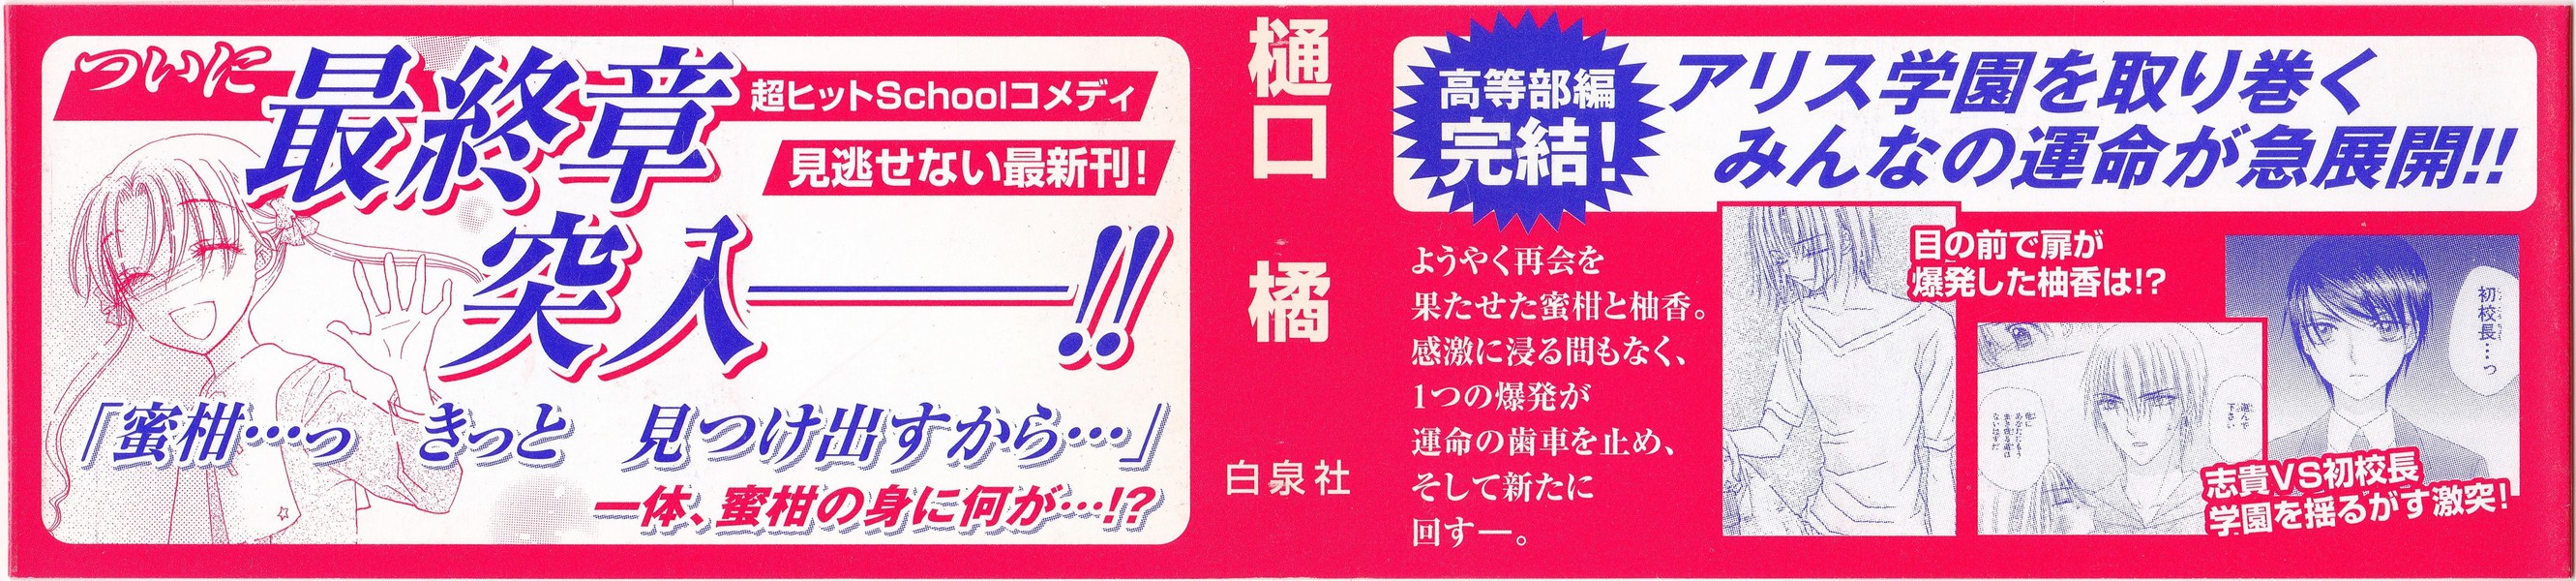 樋口橘 学園アリス 24巻 花とゆめコミックス リスト 蒐集匣